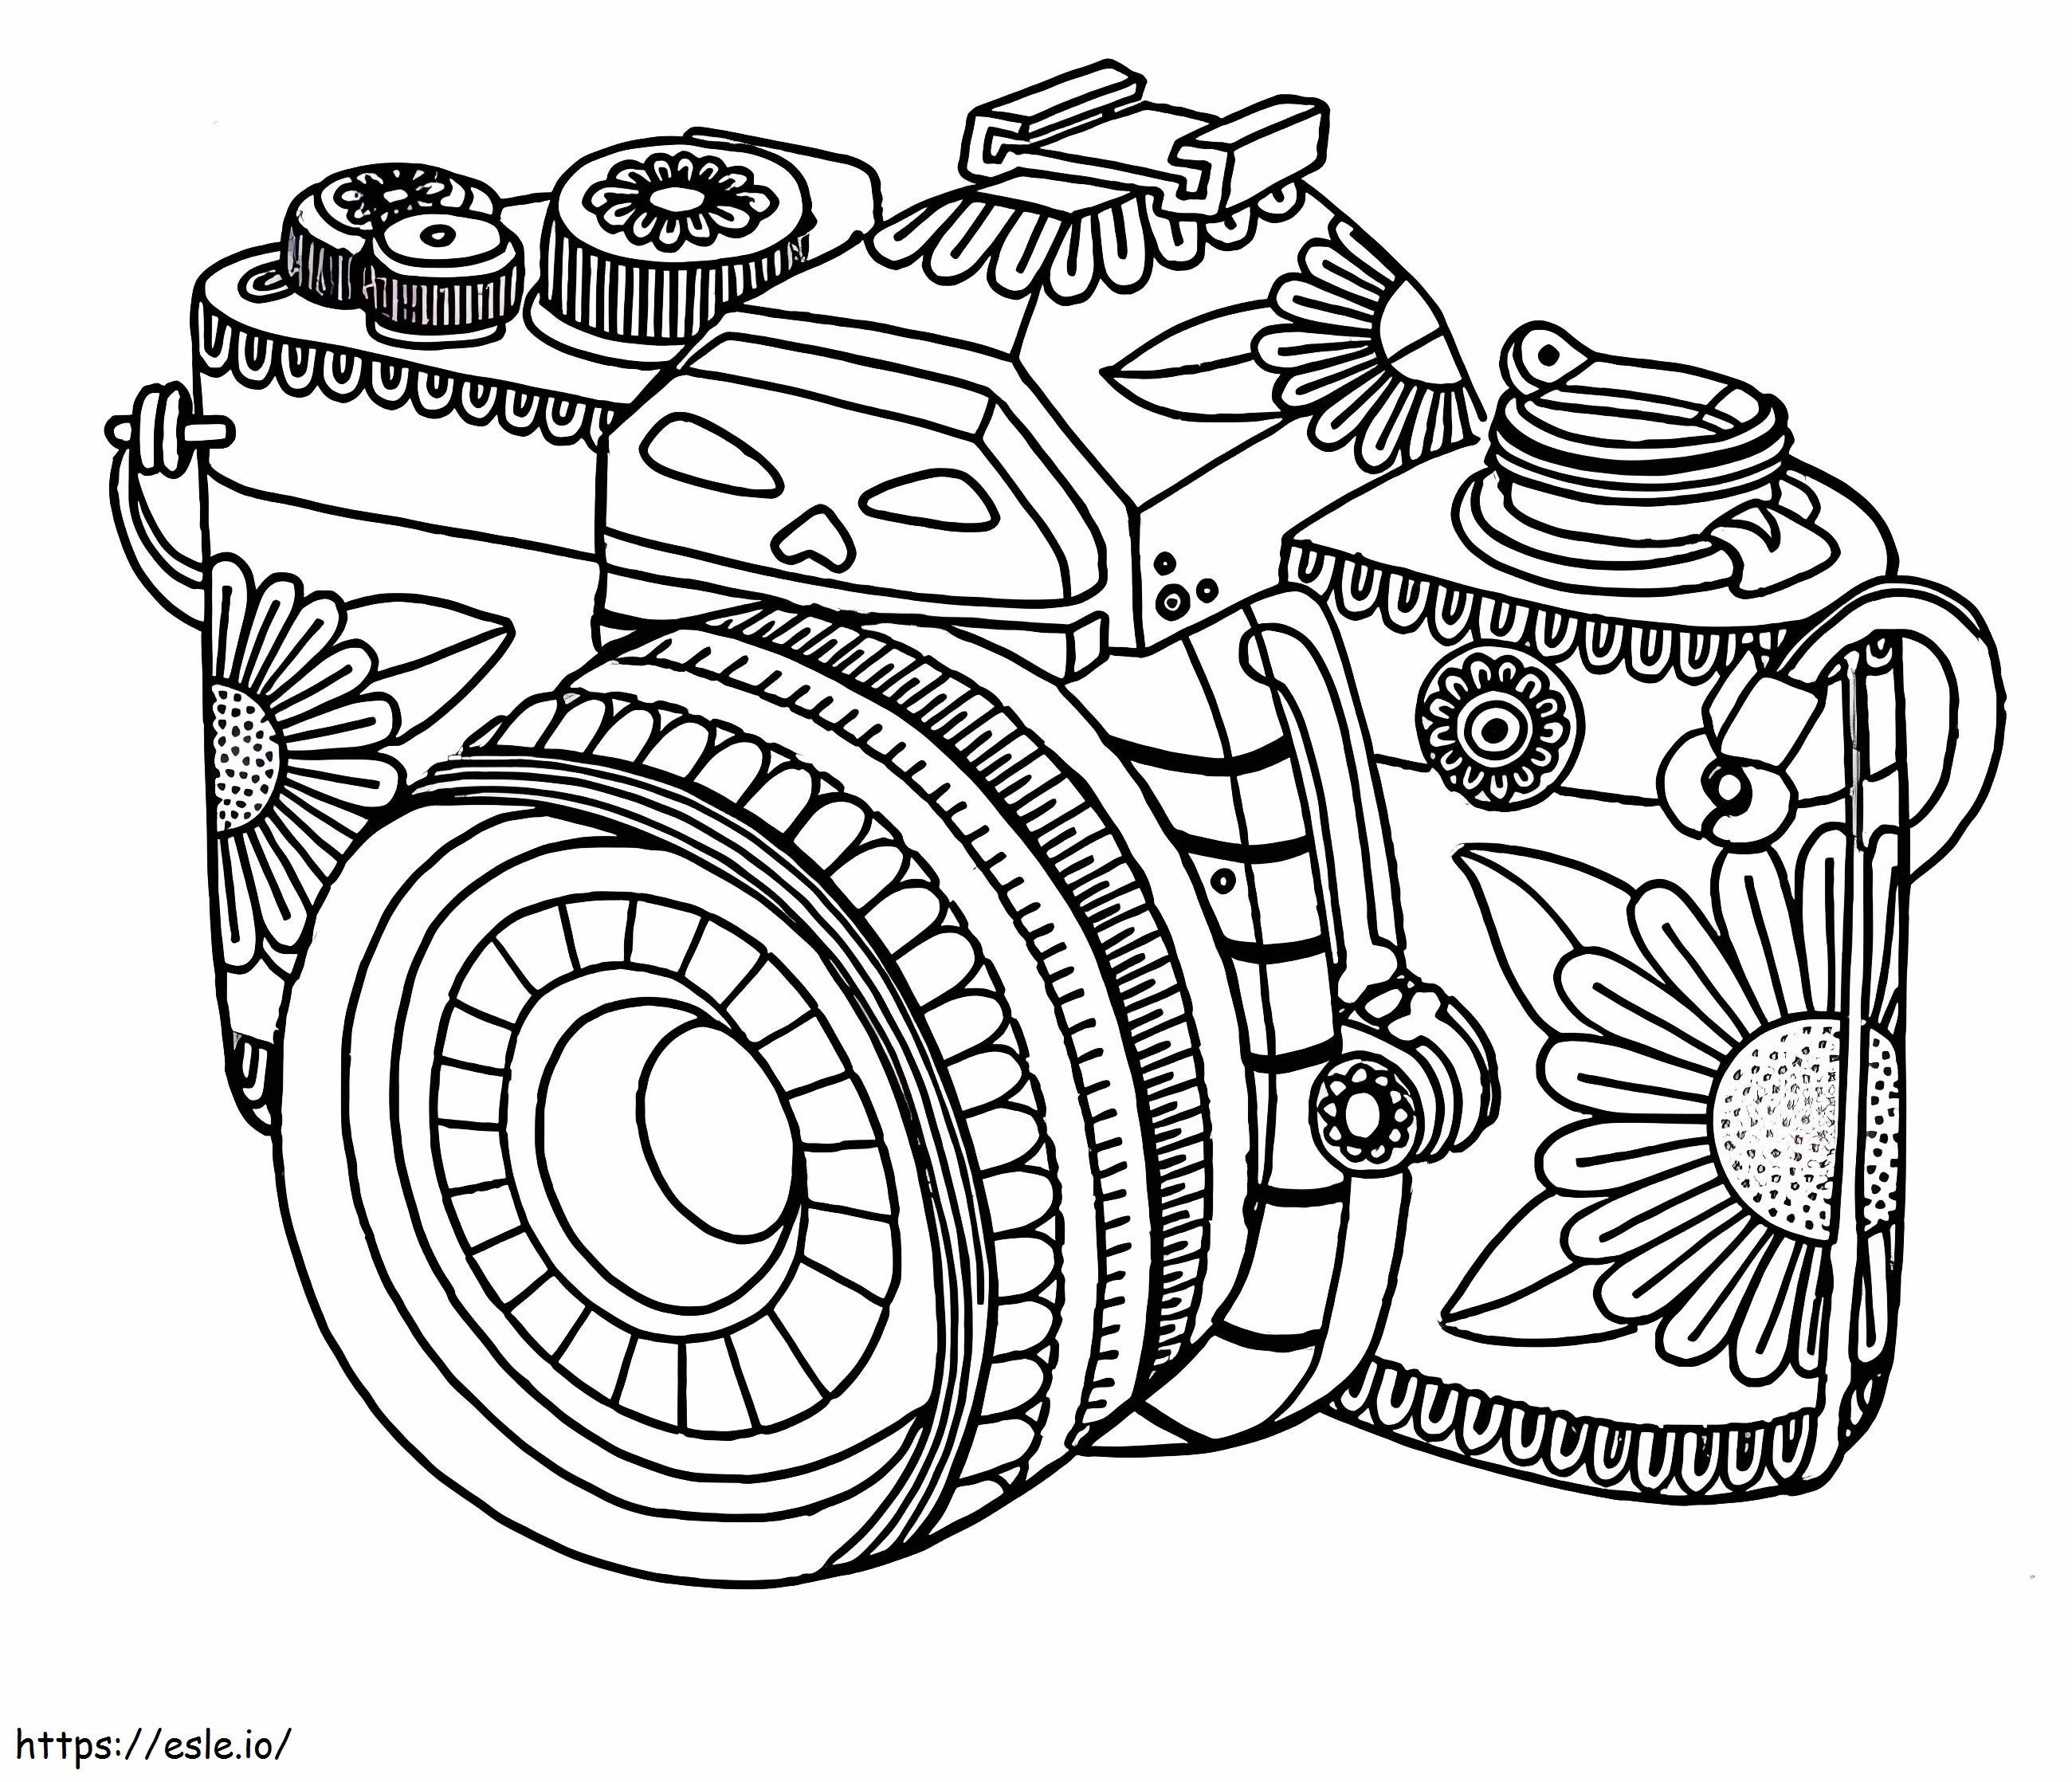 Coloriage 1532138715 Bel appareil photo A4 à imprimer dessin